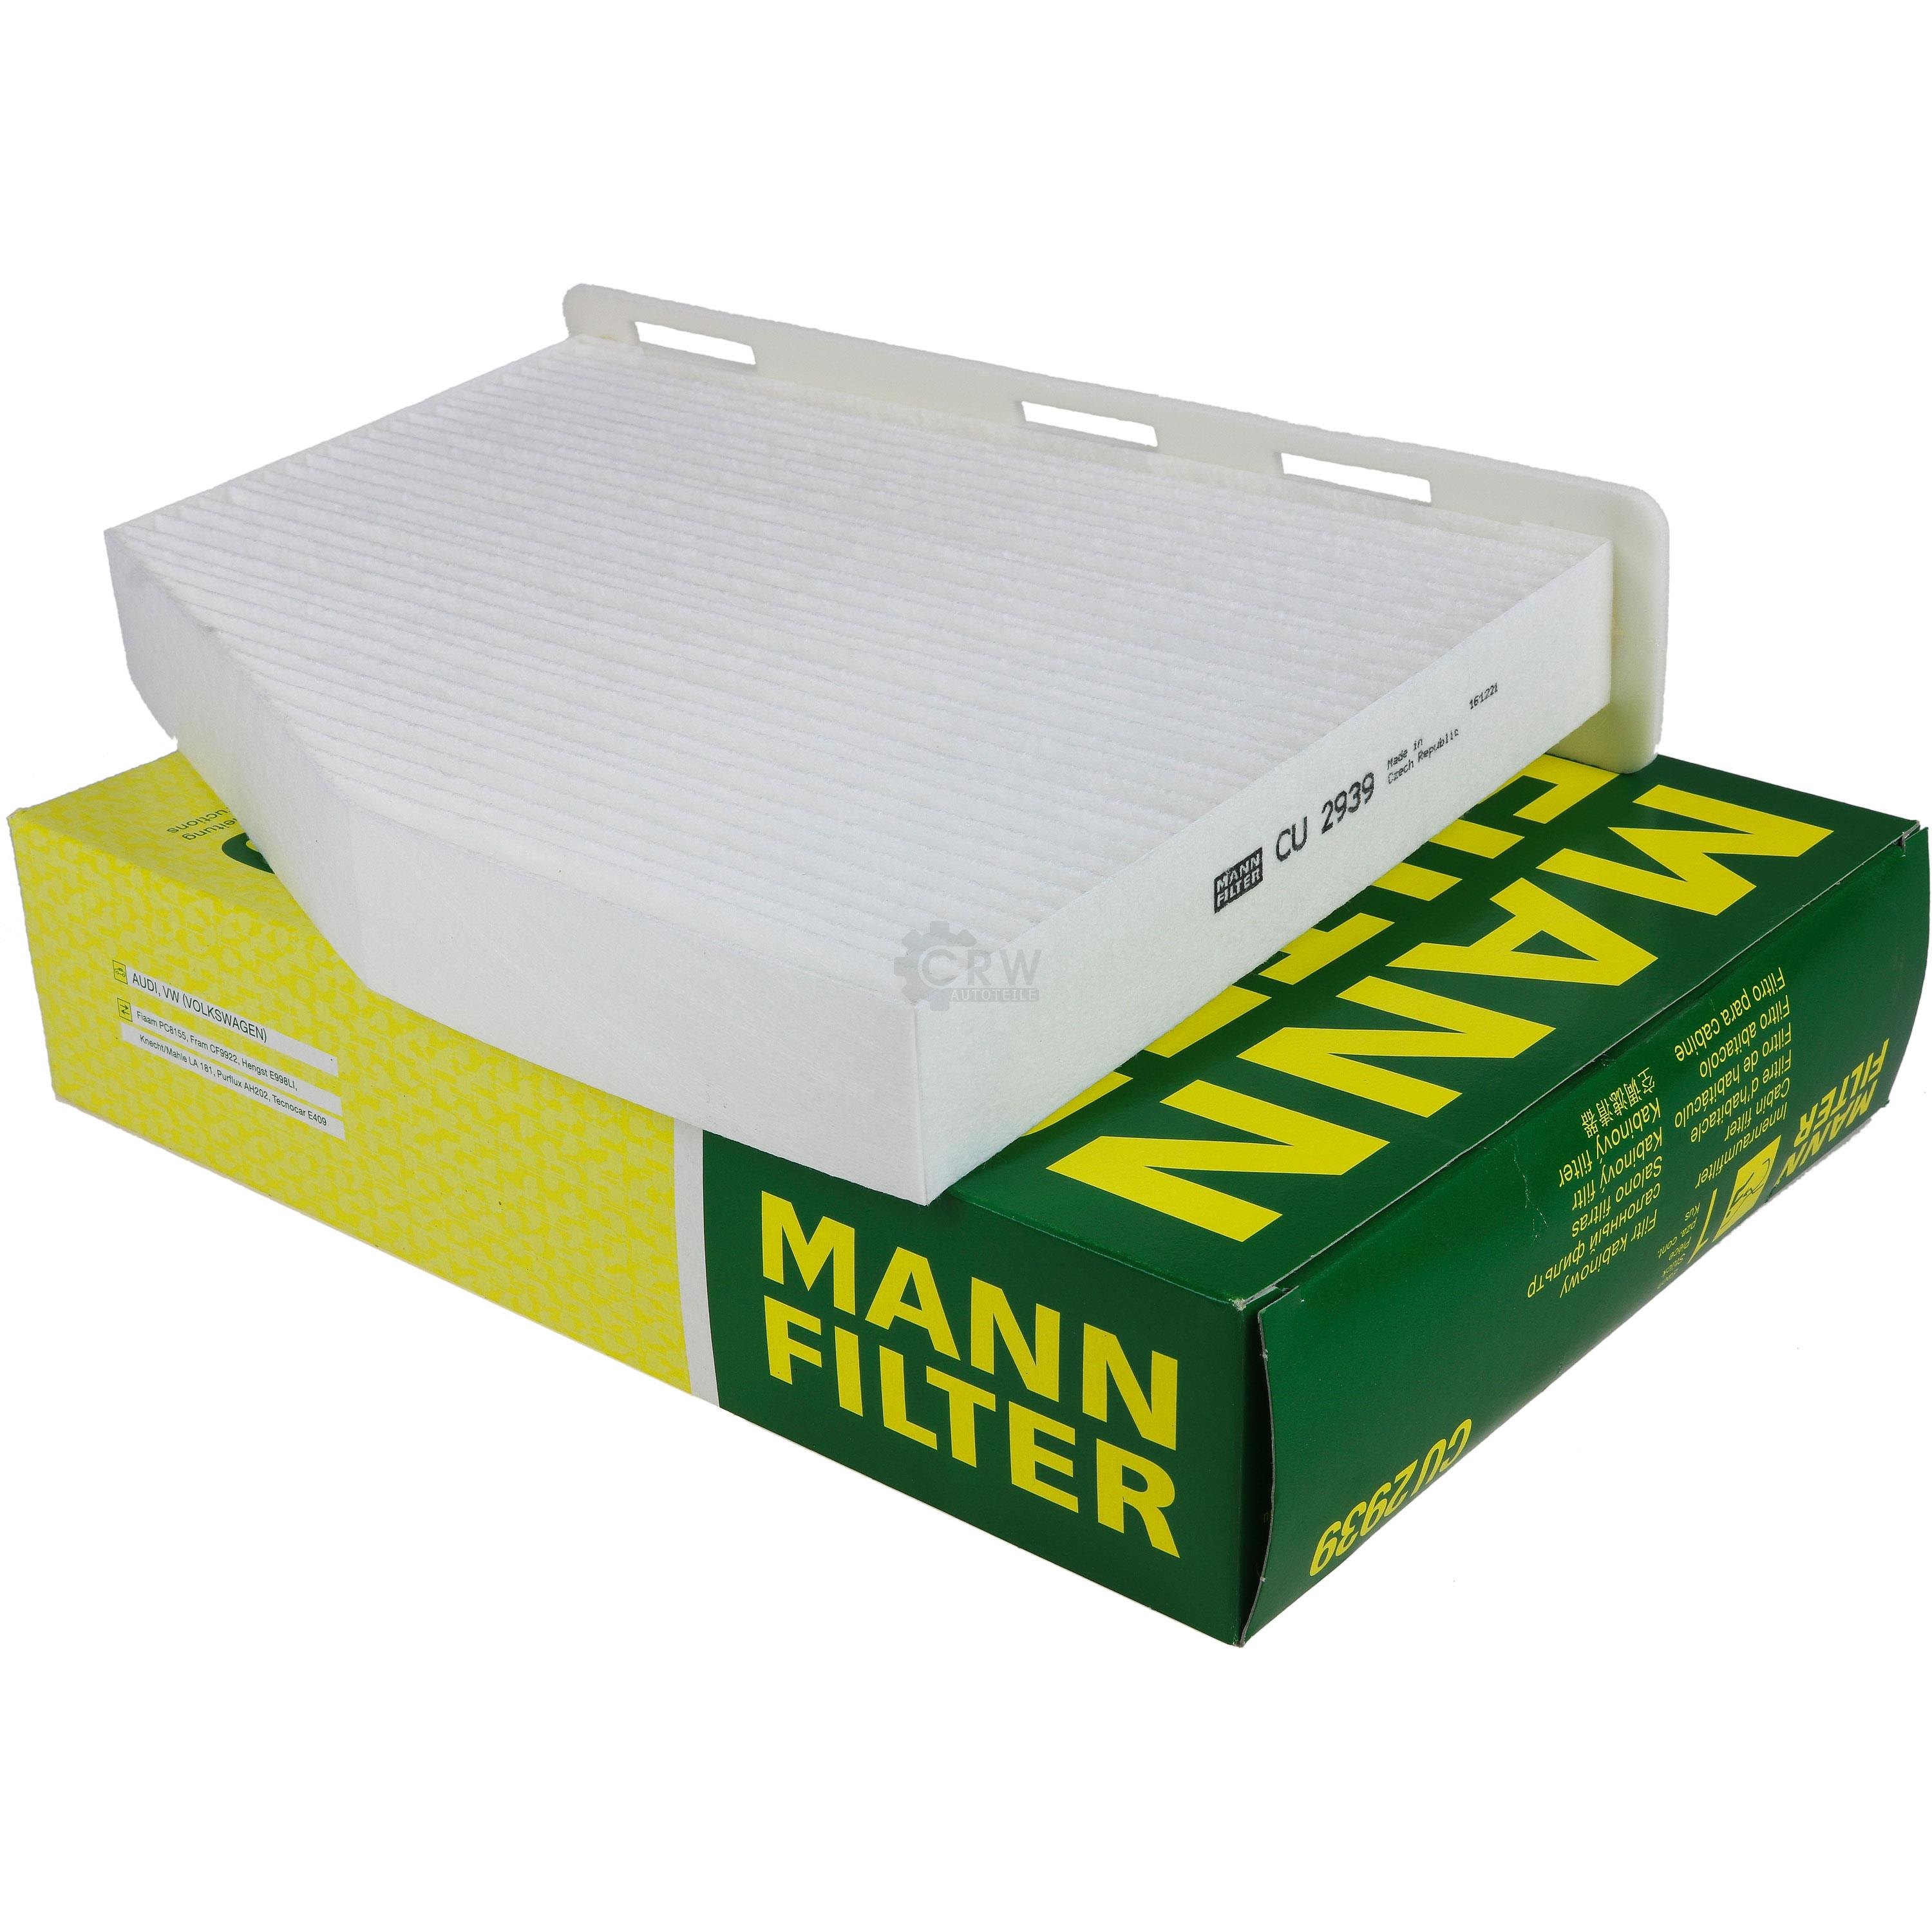 MANN-FILTER Innenraumfilter Pollenfilter CU 2939